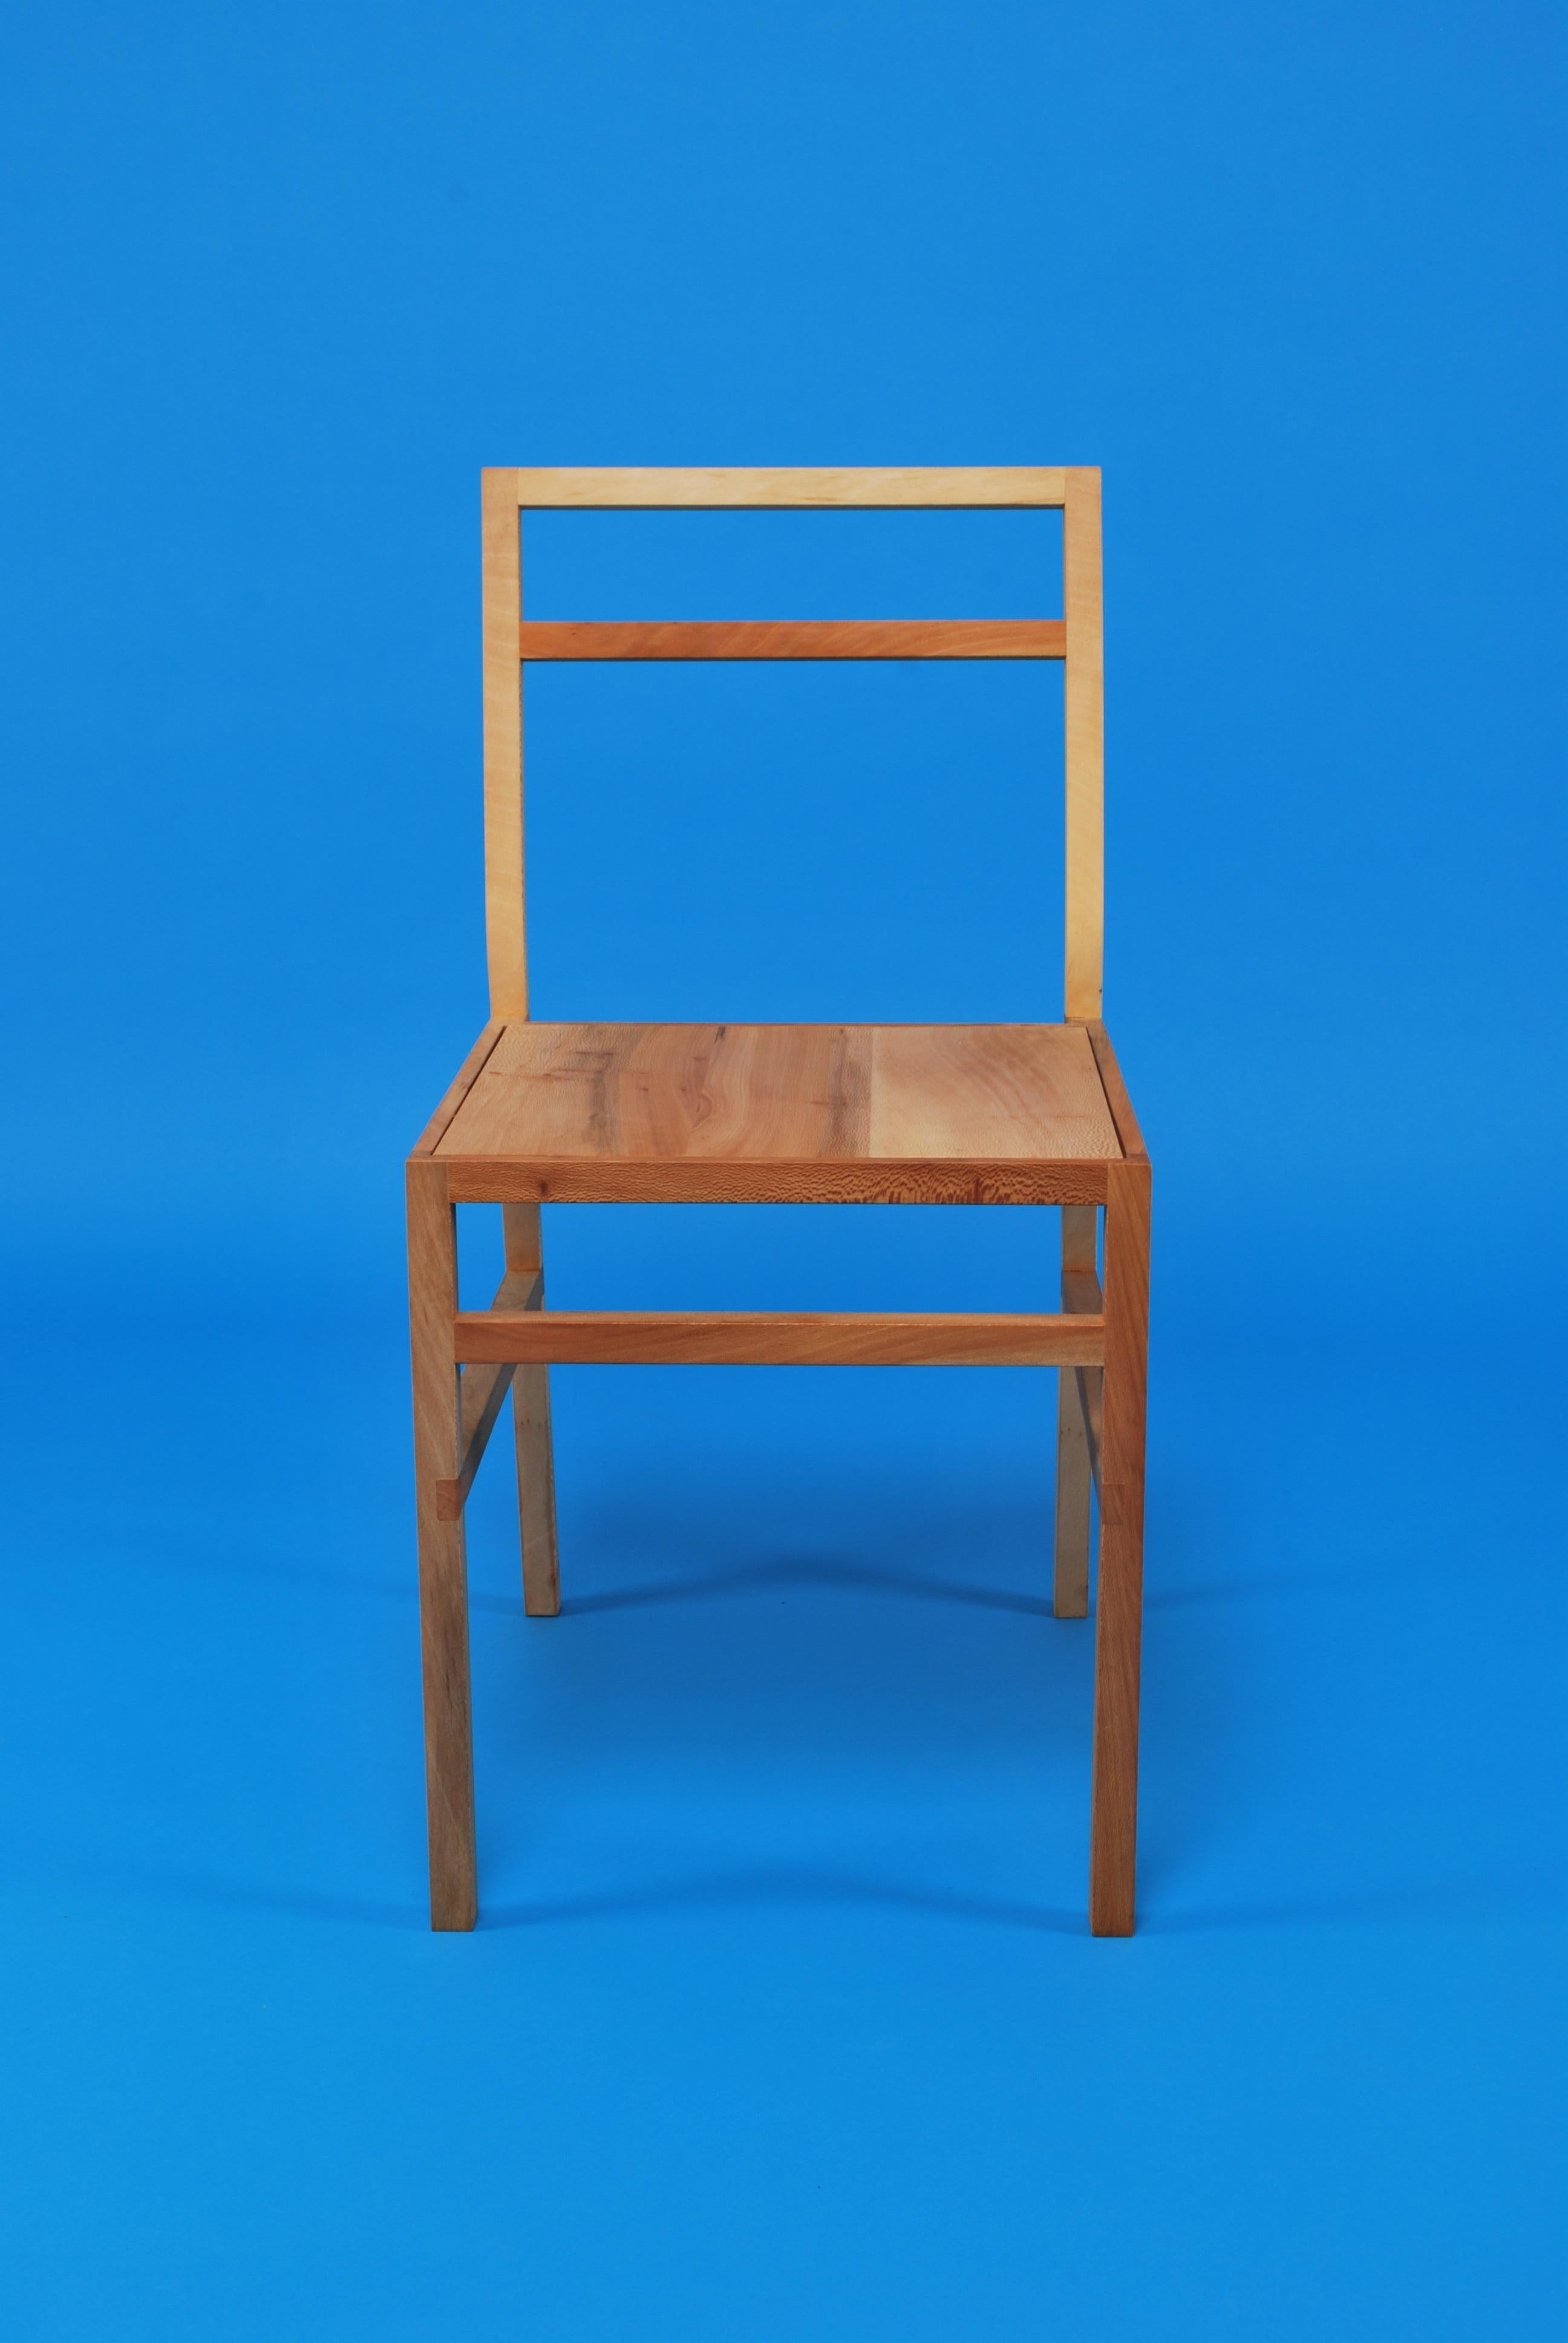 Chaise de salle à manger Organic Modern. Créé par Loose Fit et fabriqué à la main sur commande au Royaume-Uni. Disponible dans un choix de trois essences - chêne anglais, frêne ou London Plane.
D'apparence simple et délicate, il est suffisamment